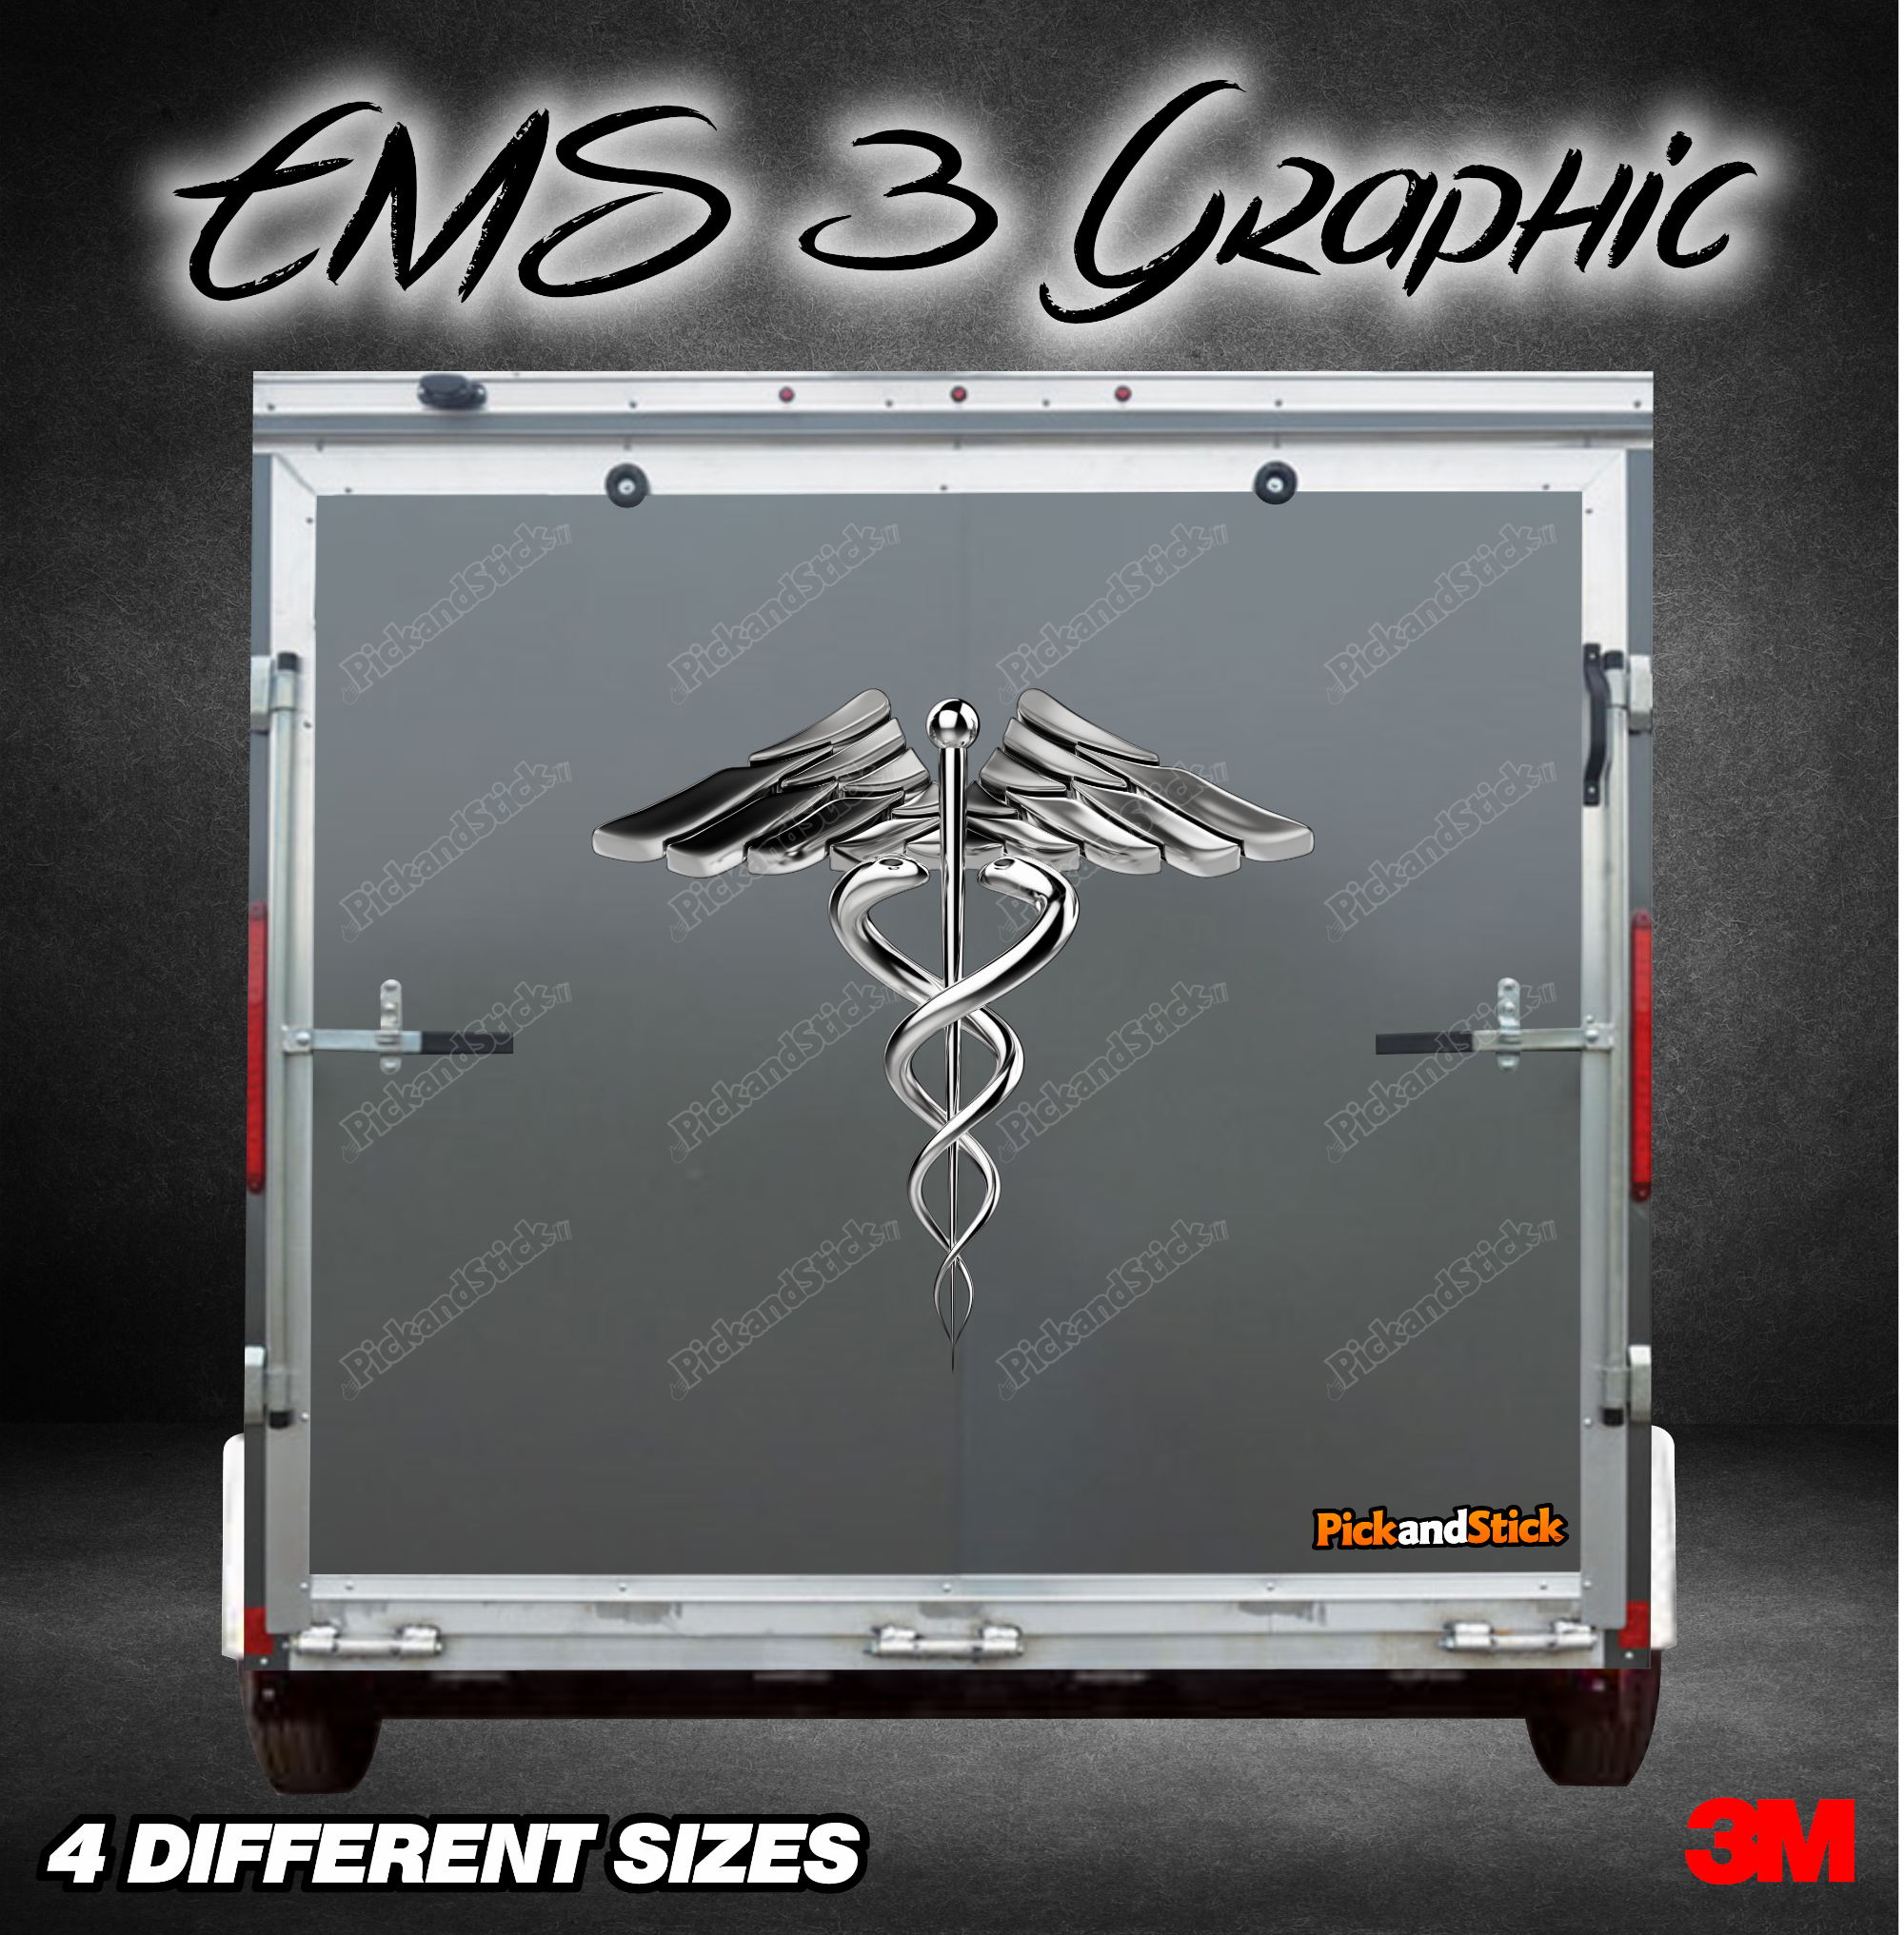 EMS 3 Trailer Graphic - PickandStickcom